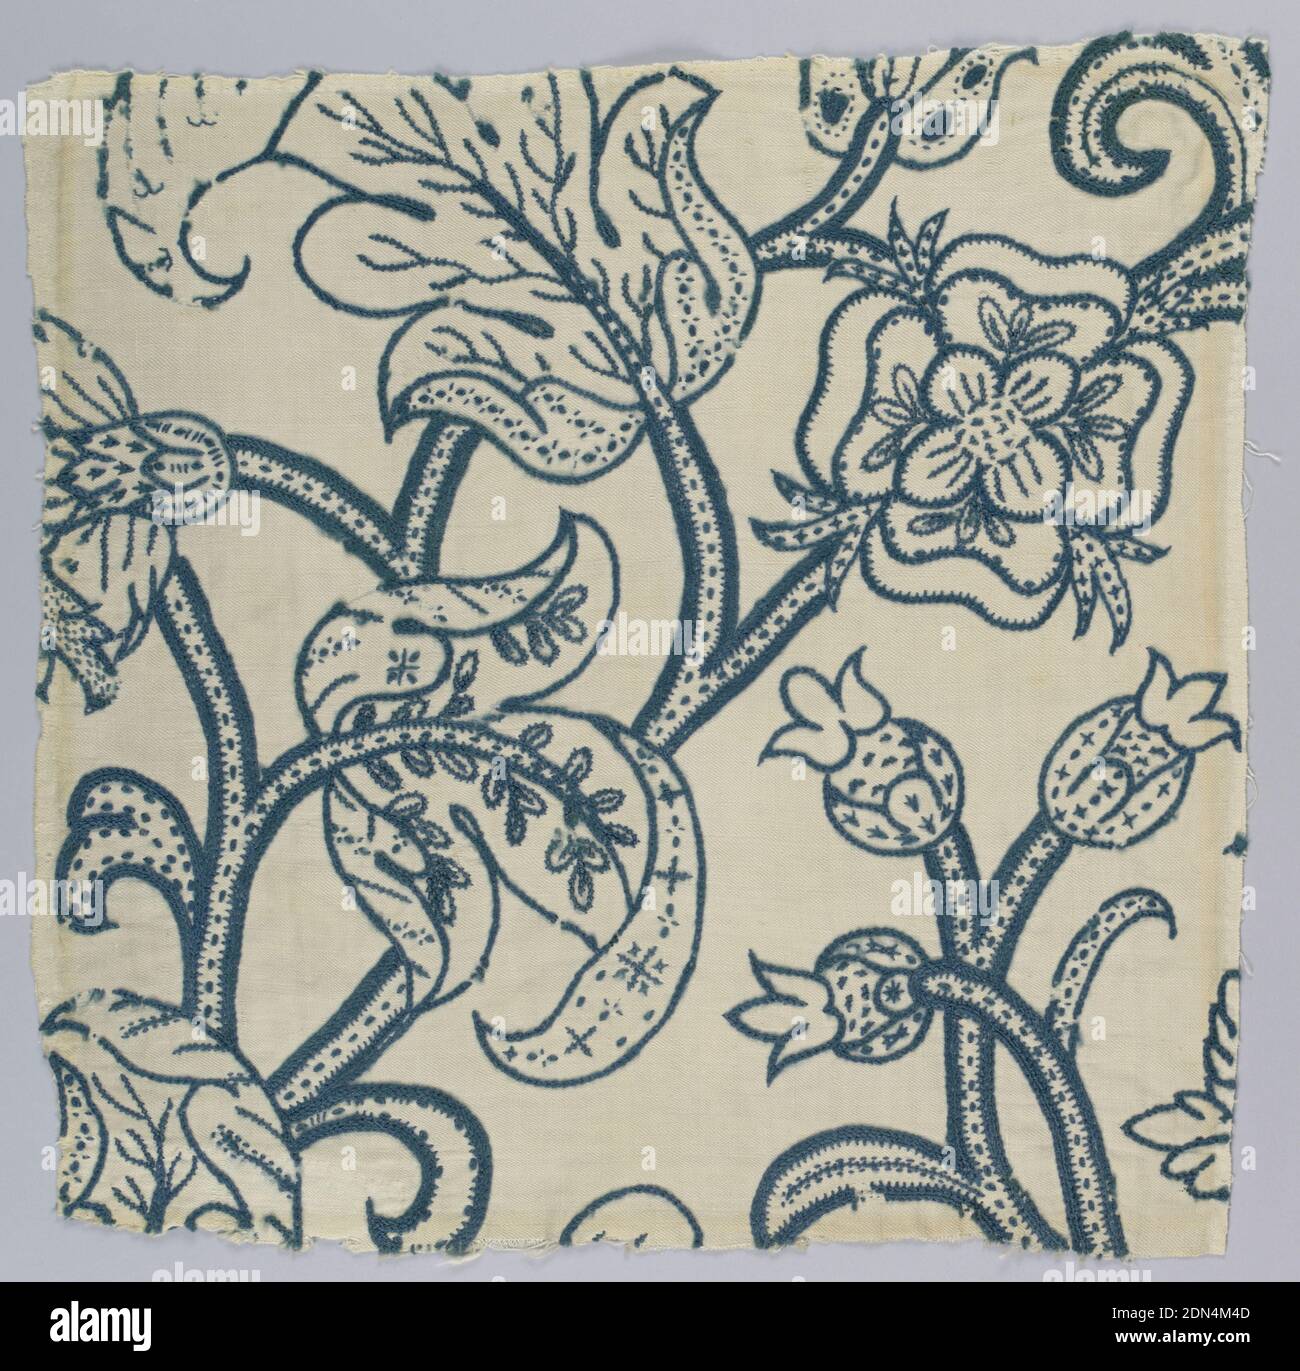 Textil, Medium: Wolle, Baumwolle, Leinen Technik: Wollstickerei mit Krempel auf Twill-Webart, quadratischer Ausschnitt aus massivem Design mit breiten, gesprenkelten Stielen mit schweren, mit Locken verzierten Blättern und großen Blütenköpfen einschließlich der Tudor-Rose. In grünlich-blauer Wolle auf Boden aus ungefärbter Baumwolle und Leinenwill. Dye soll Holz sein., England, 1600–1550, Stickereien & Stitching, Textil Stockfoto